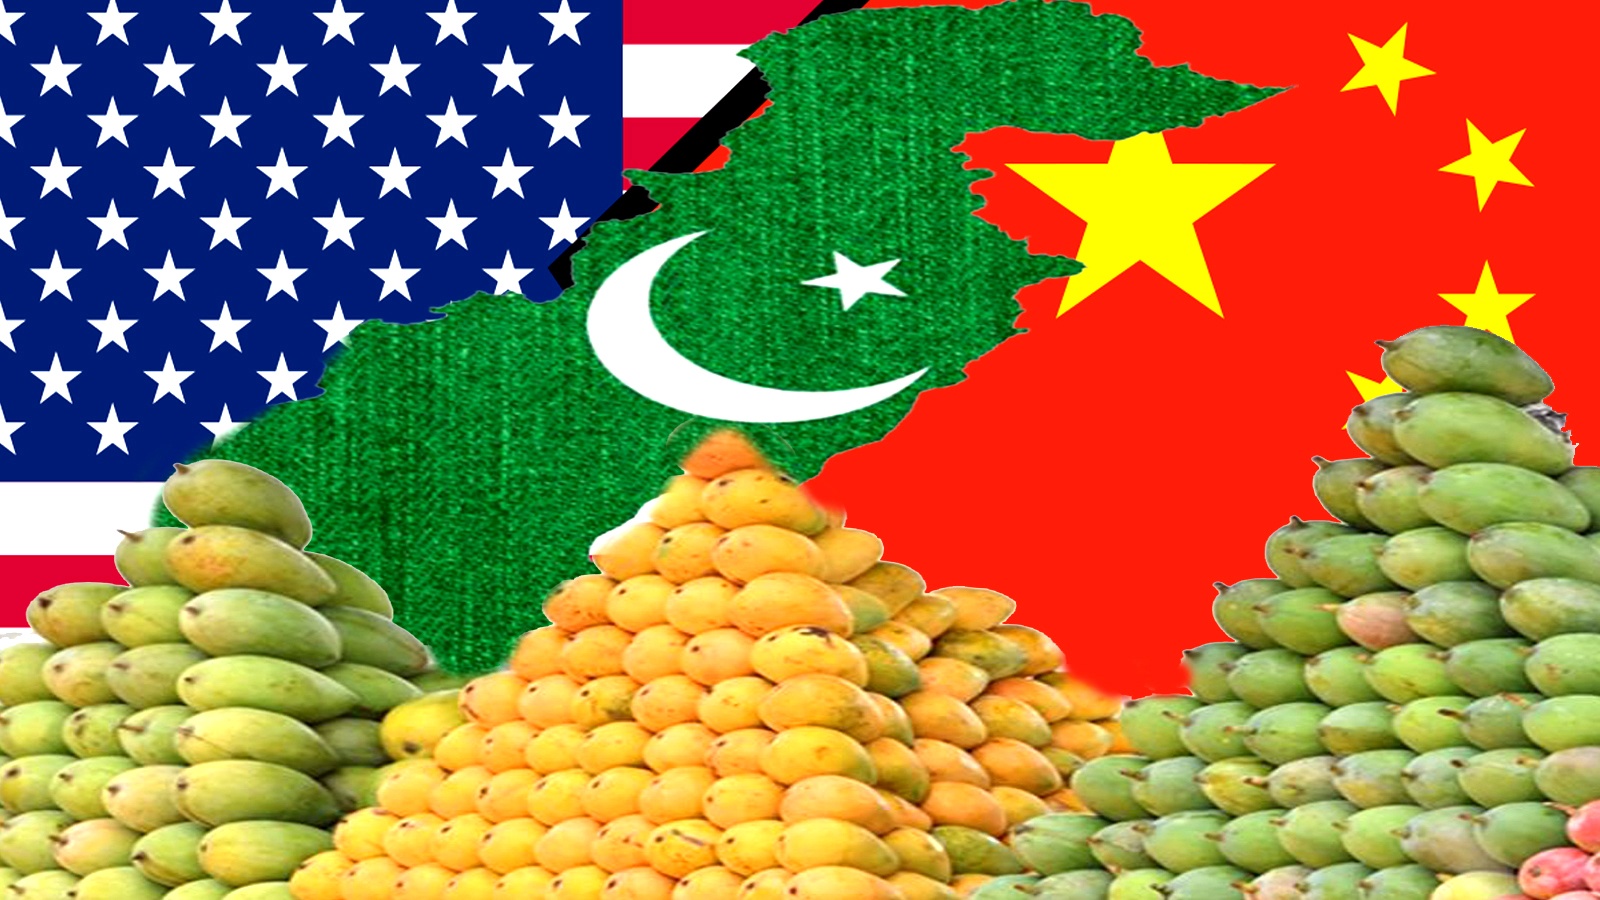 पाकिस्तान को मैंगो डिप्लोमेसी (Mango Diplomacy) के मामले में चीन-अमेरिका के सामने मुंह की खानी पड़ी.पाकिस्तान आम्र कूटनीति के तहत तमाम देशों को मैंगो गिफ्ट कर रहा है.